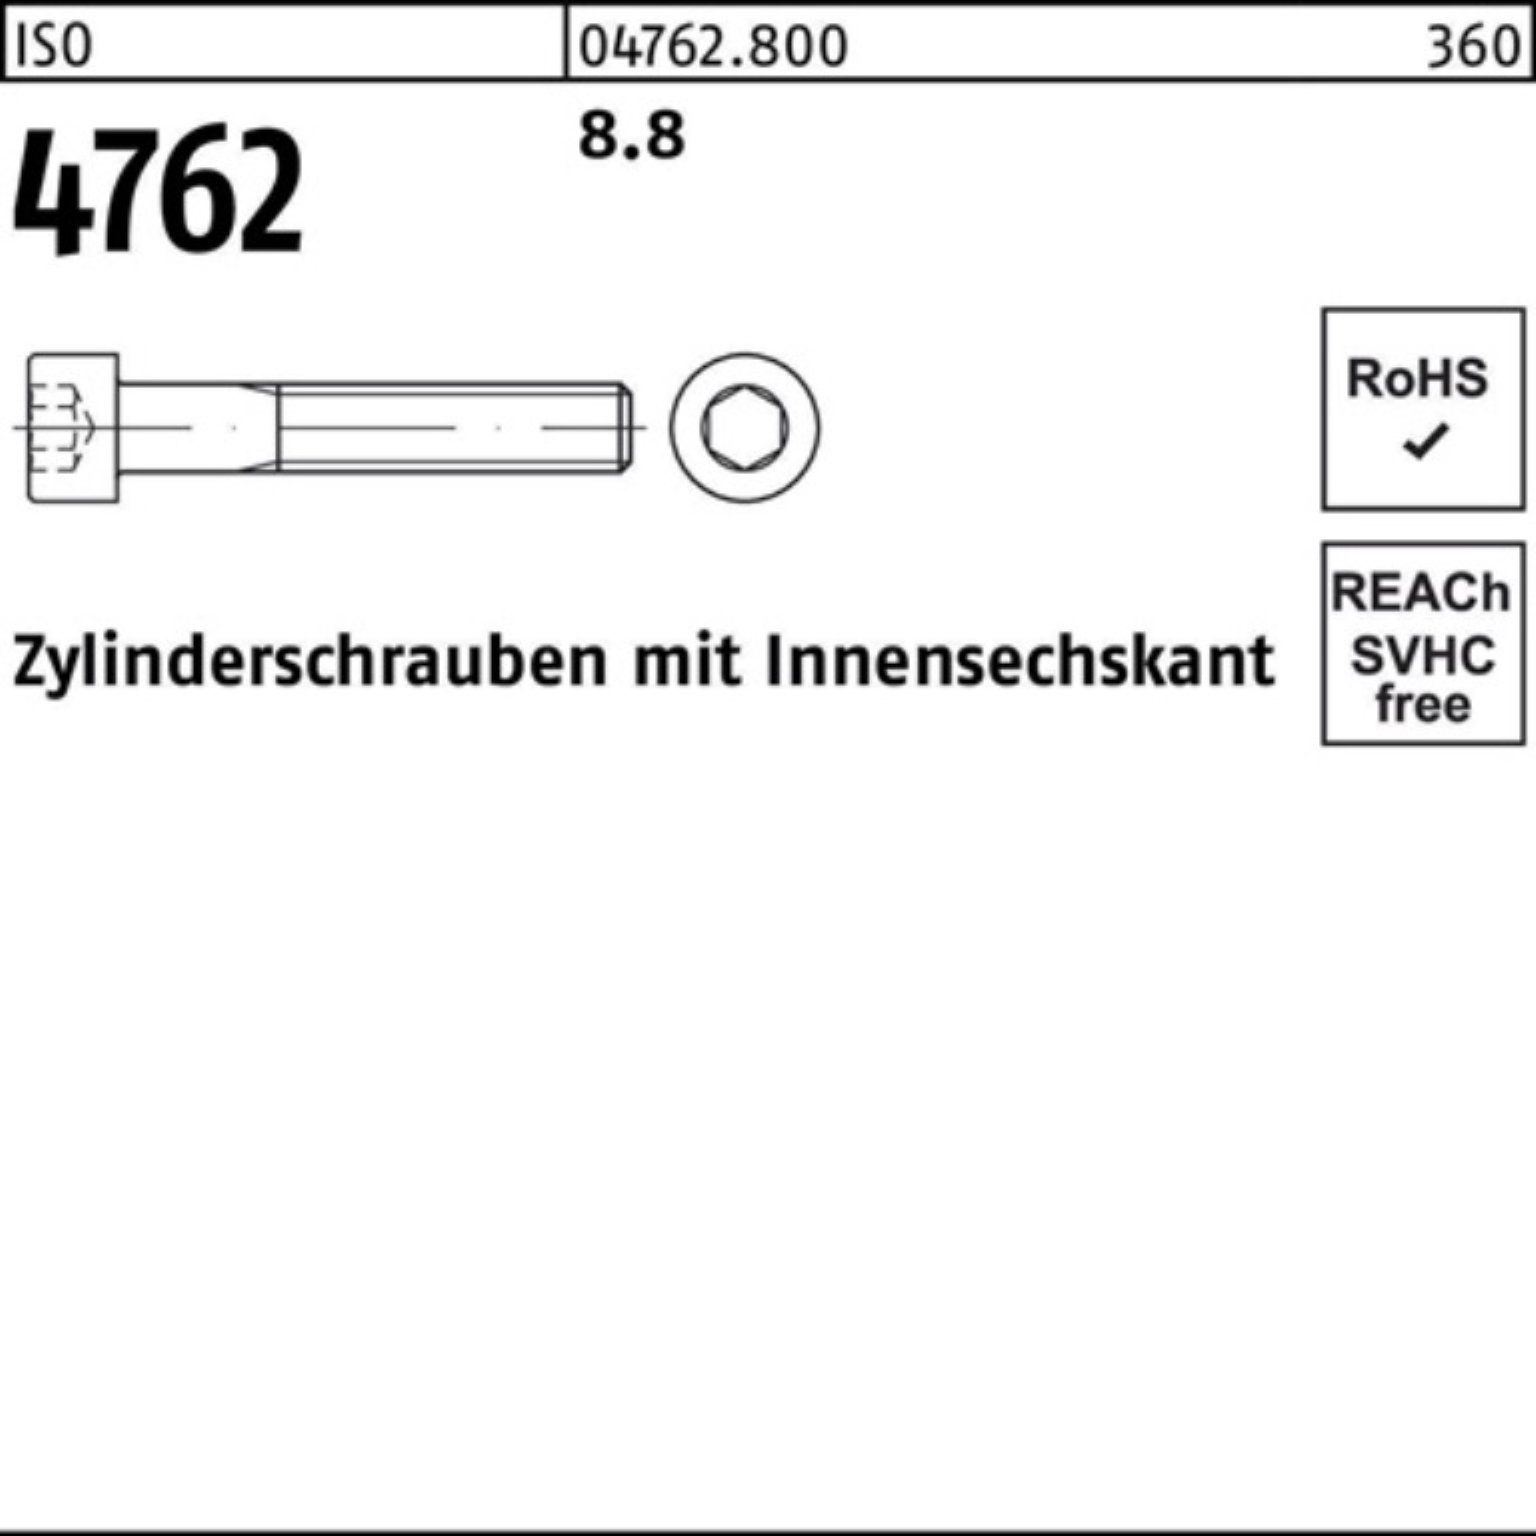 1 8.8 370 Innen-6kt 100er Zylinderschraube Stück Pack 4762 I Reyher M24x Zylinderschraube ISO